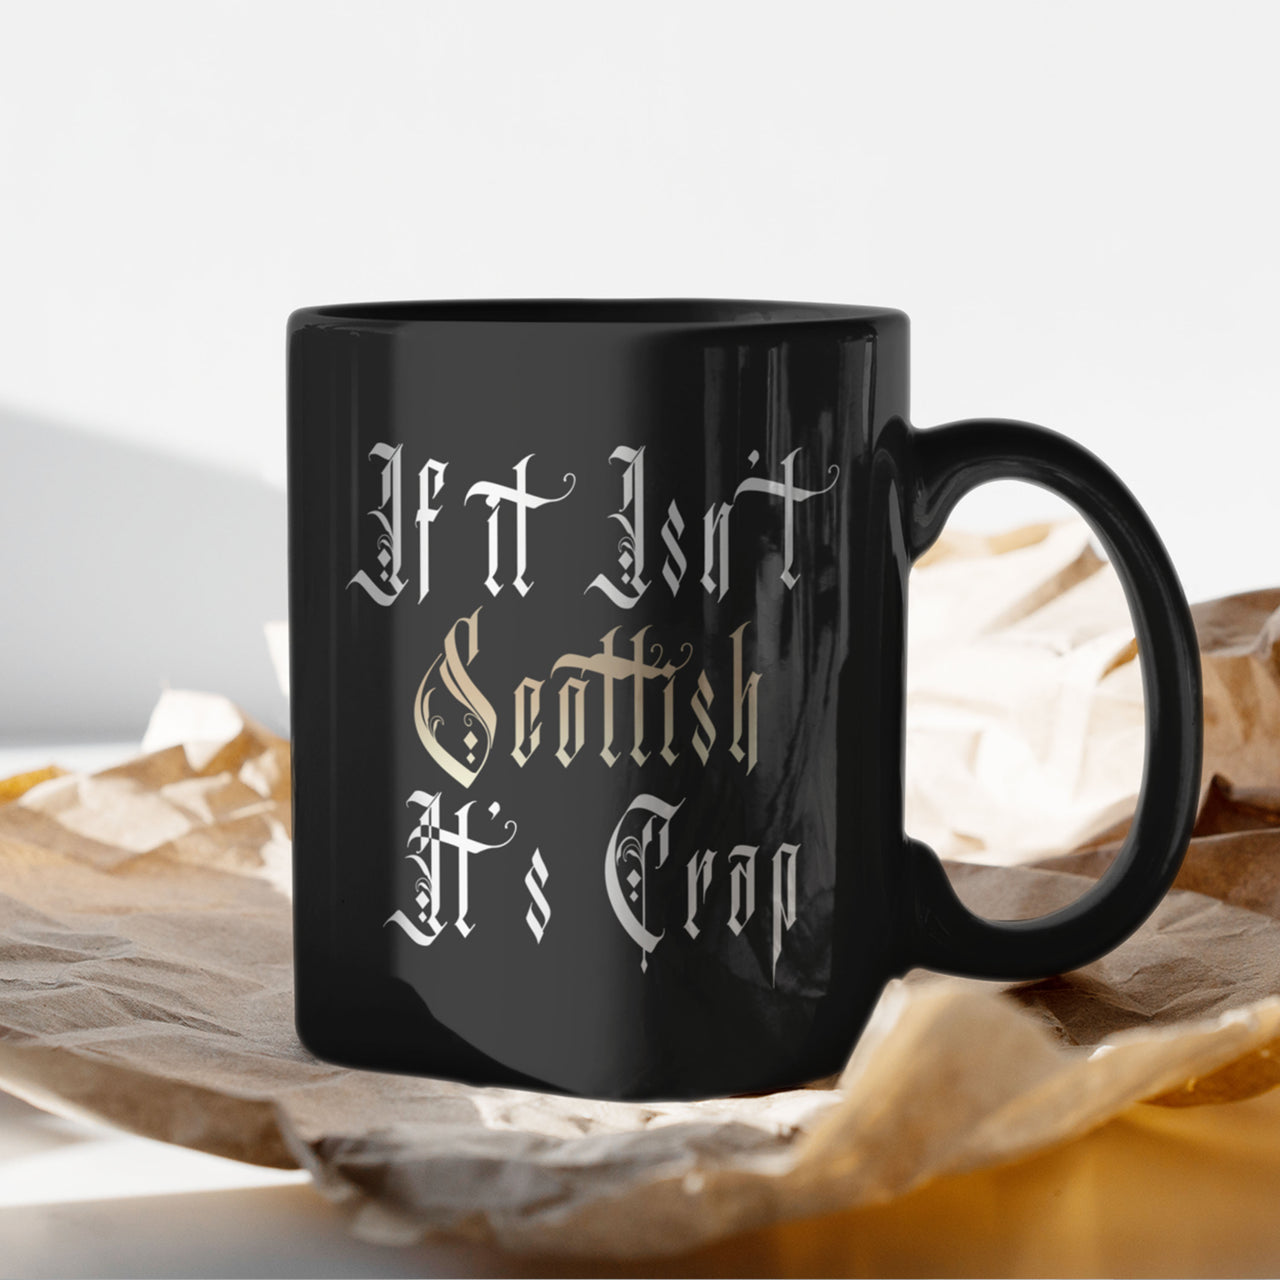 if it isn't scottish it's crap funny scottish quote mug